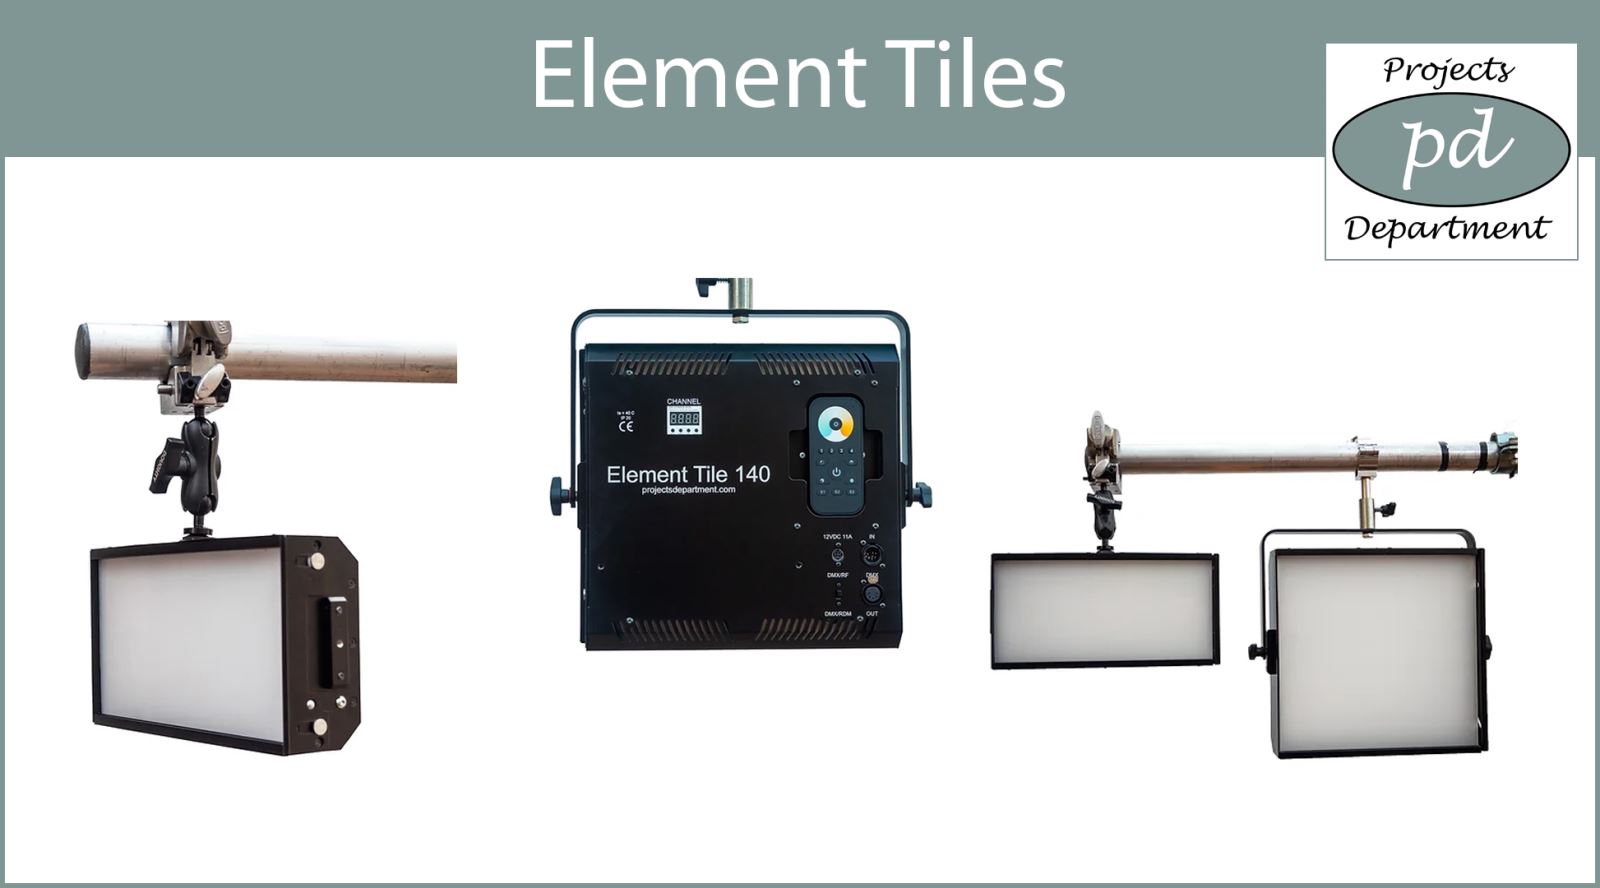 Projects Department expands its Element Tile range